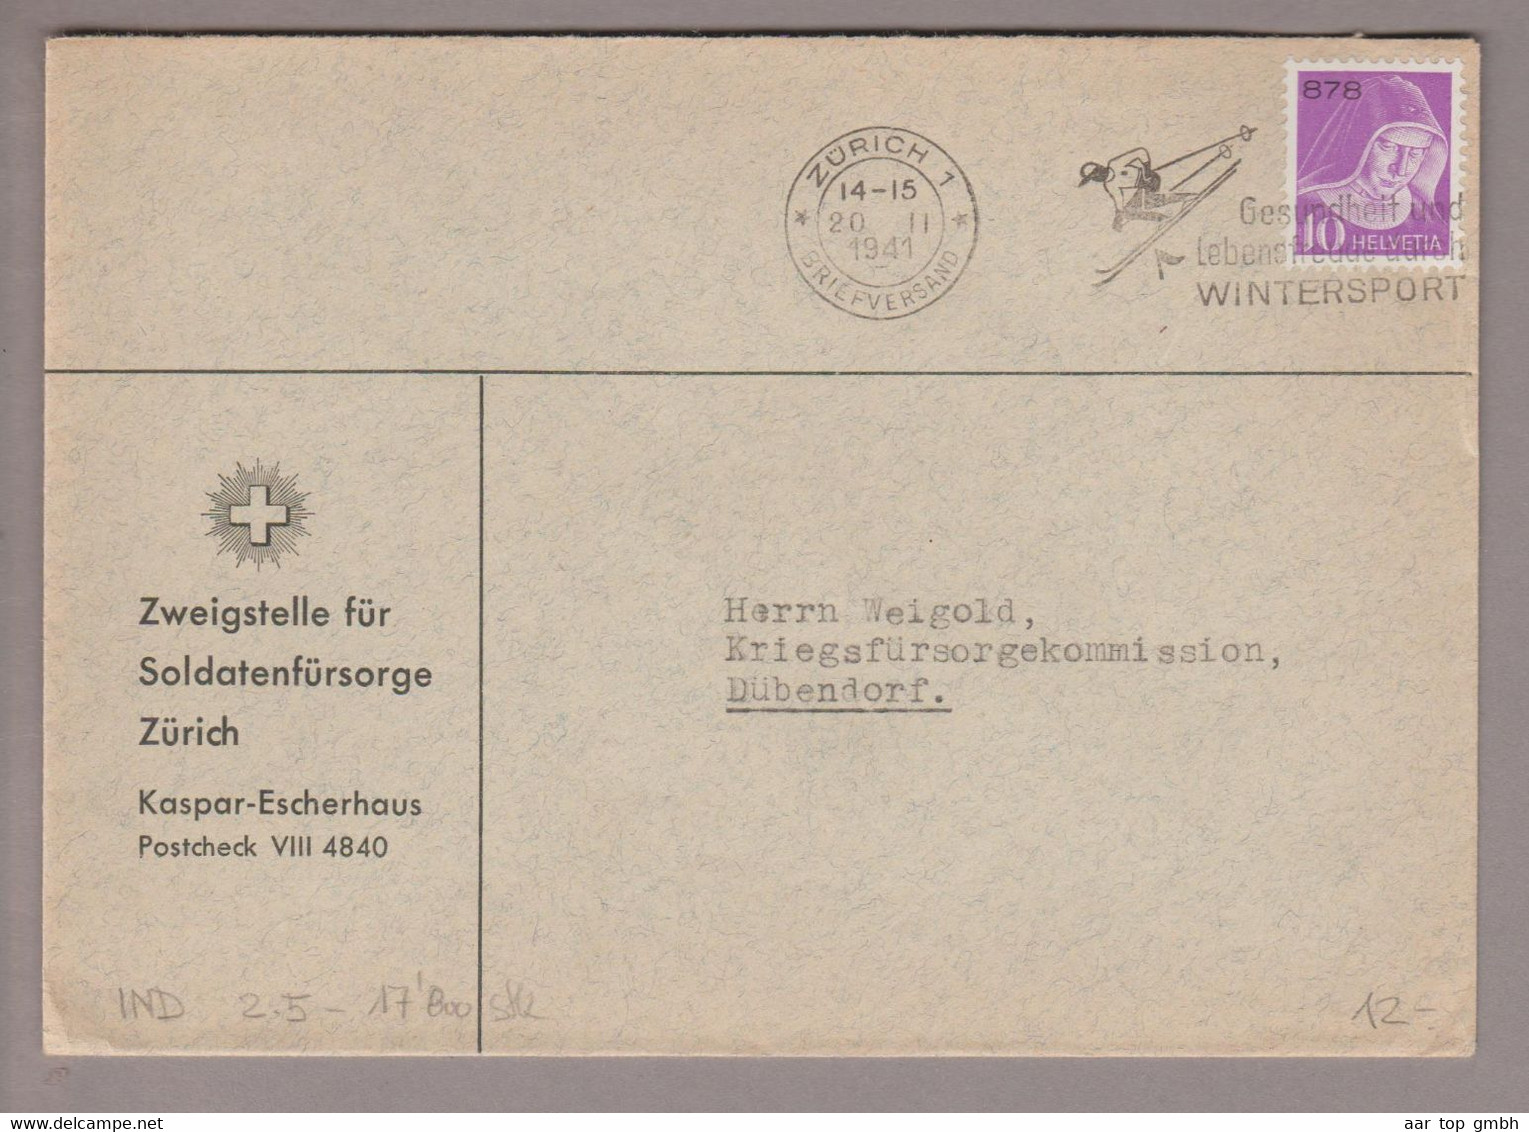 CH Portofreiheit Zu#15z 10Rp. GR#878 Brief 1941-02-20 Zürich Soldatenfürsorge Zürich - Vrijstelling Van Portkosten